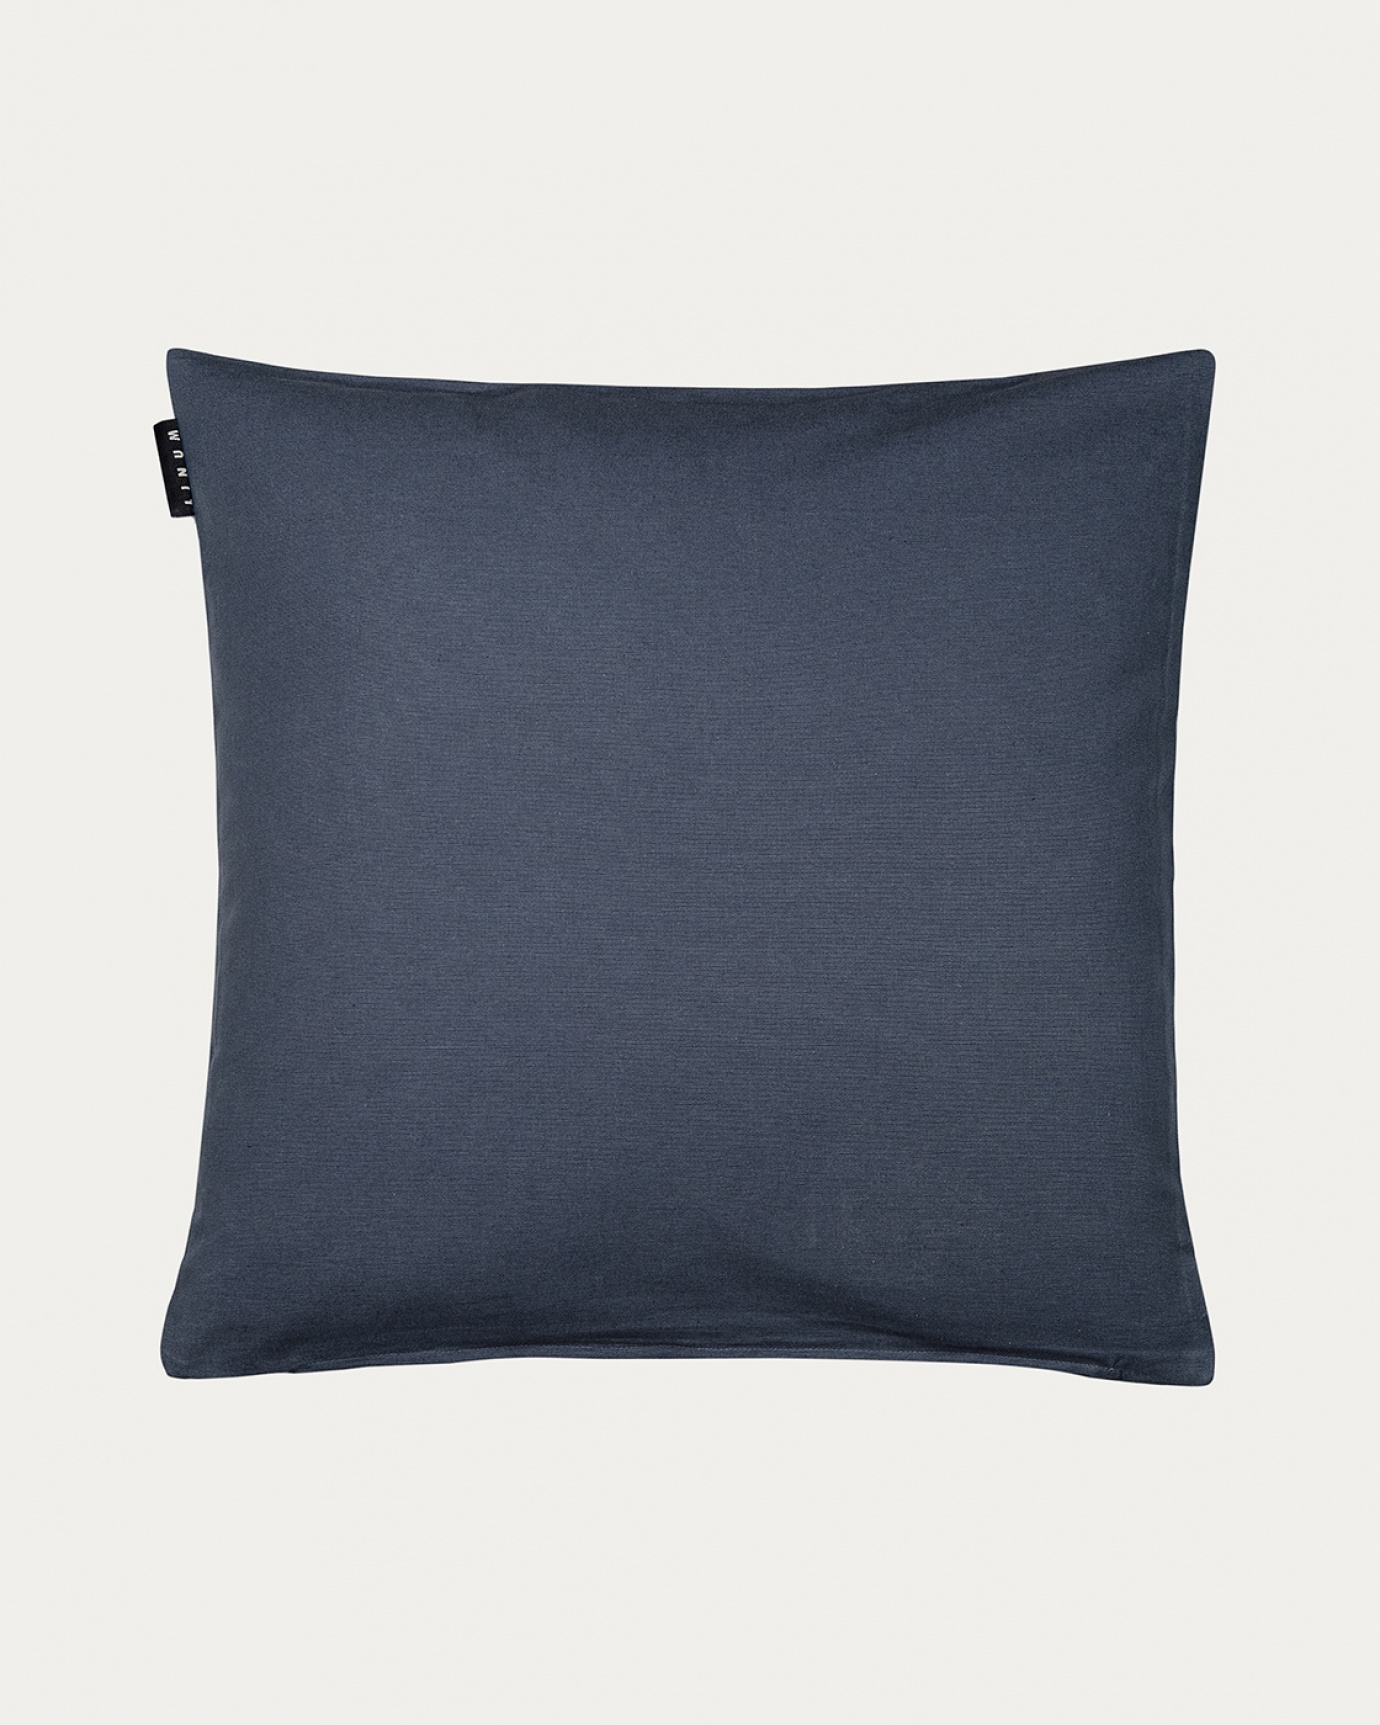 Produktbild dunkles stahlblau ANNABELL Kissenhülle aus weicher Baumwolle von LINUM DESIGN. Größe 50x50 cm.